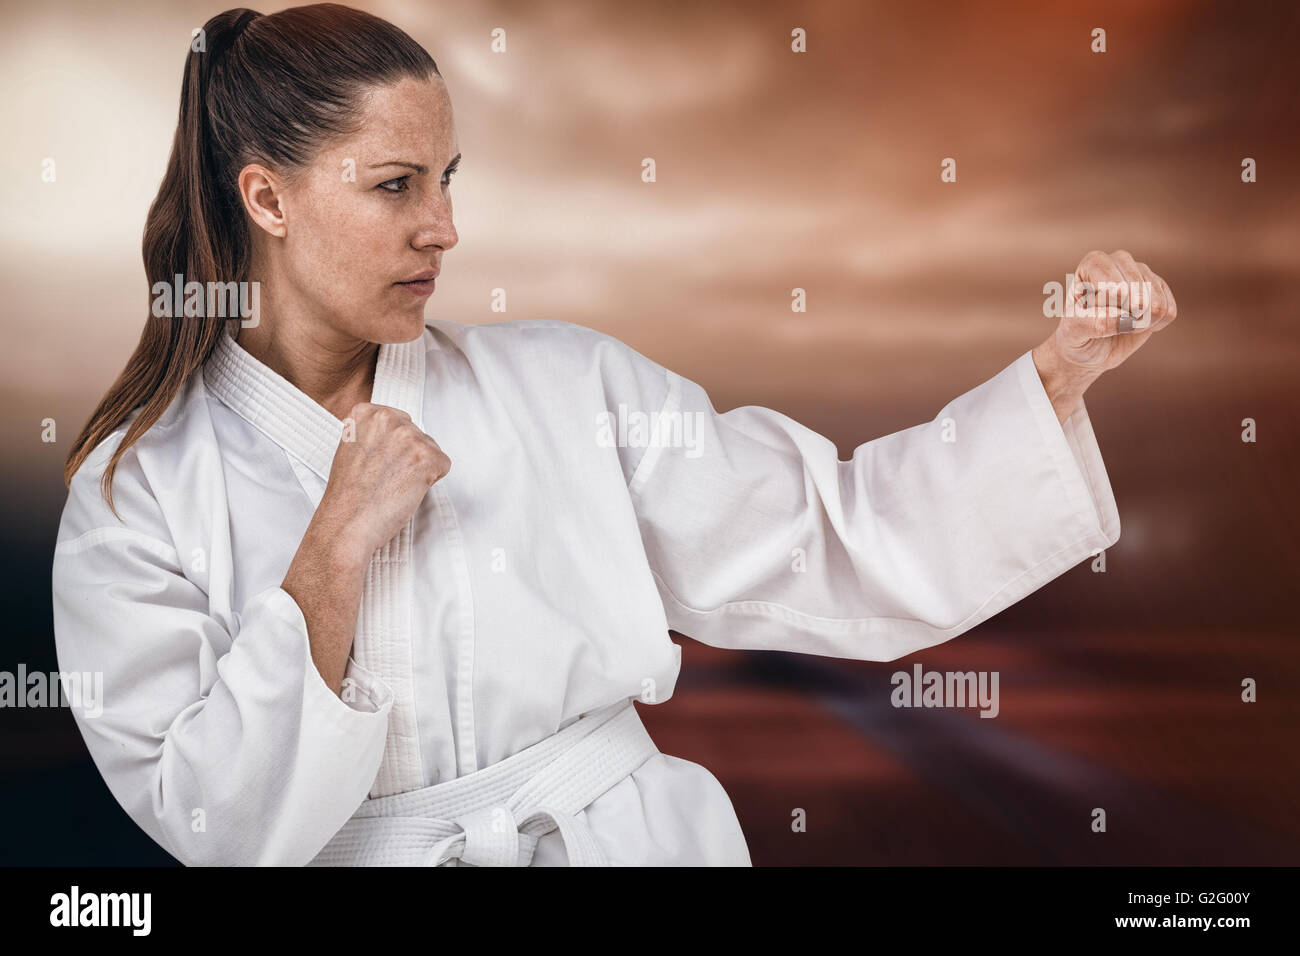 Imagen compuesta de luchador de realizar karate postura Foto de stock